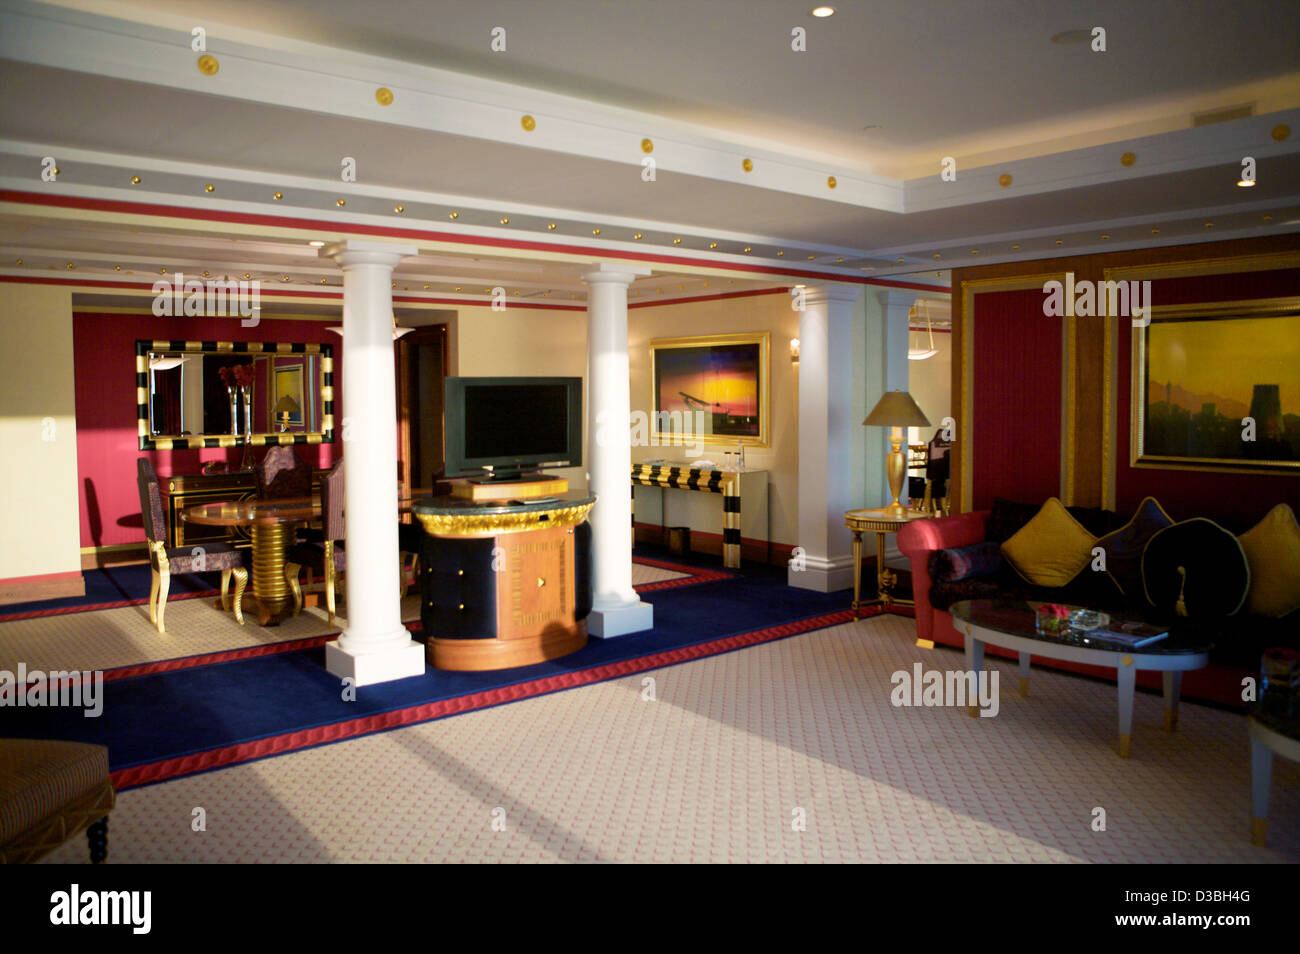 7 star burj al arab hotel fotografías e imágenes de alta resolución -  Página 2 - Alamy